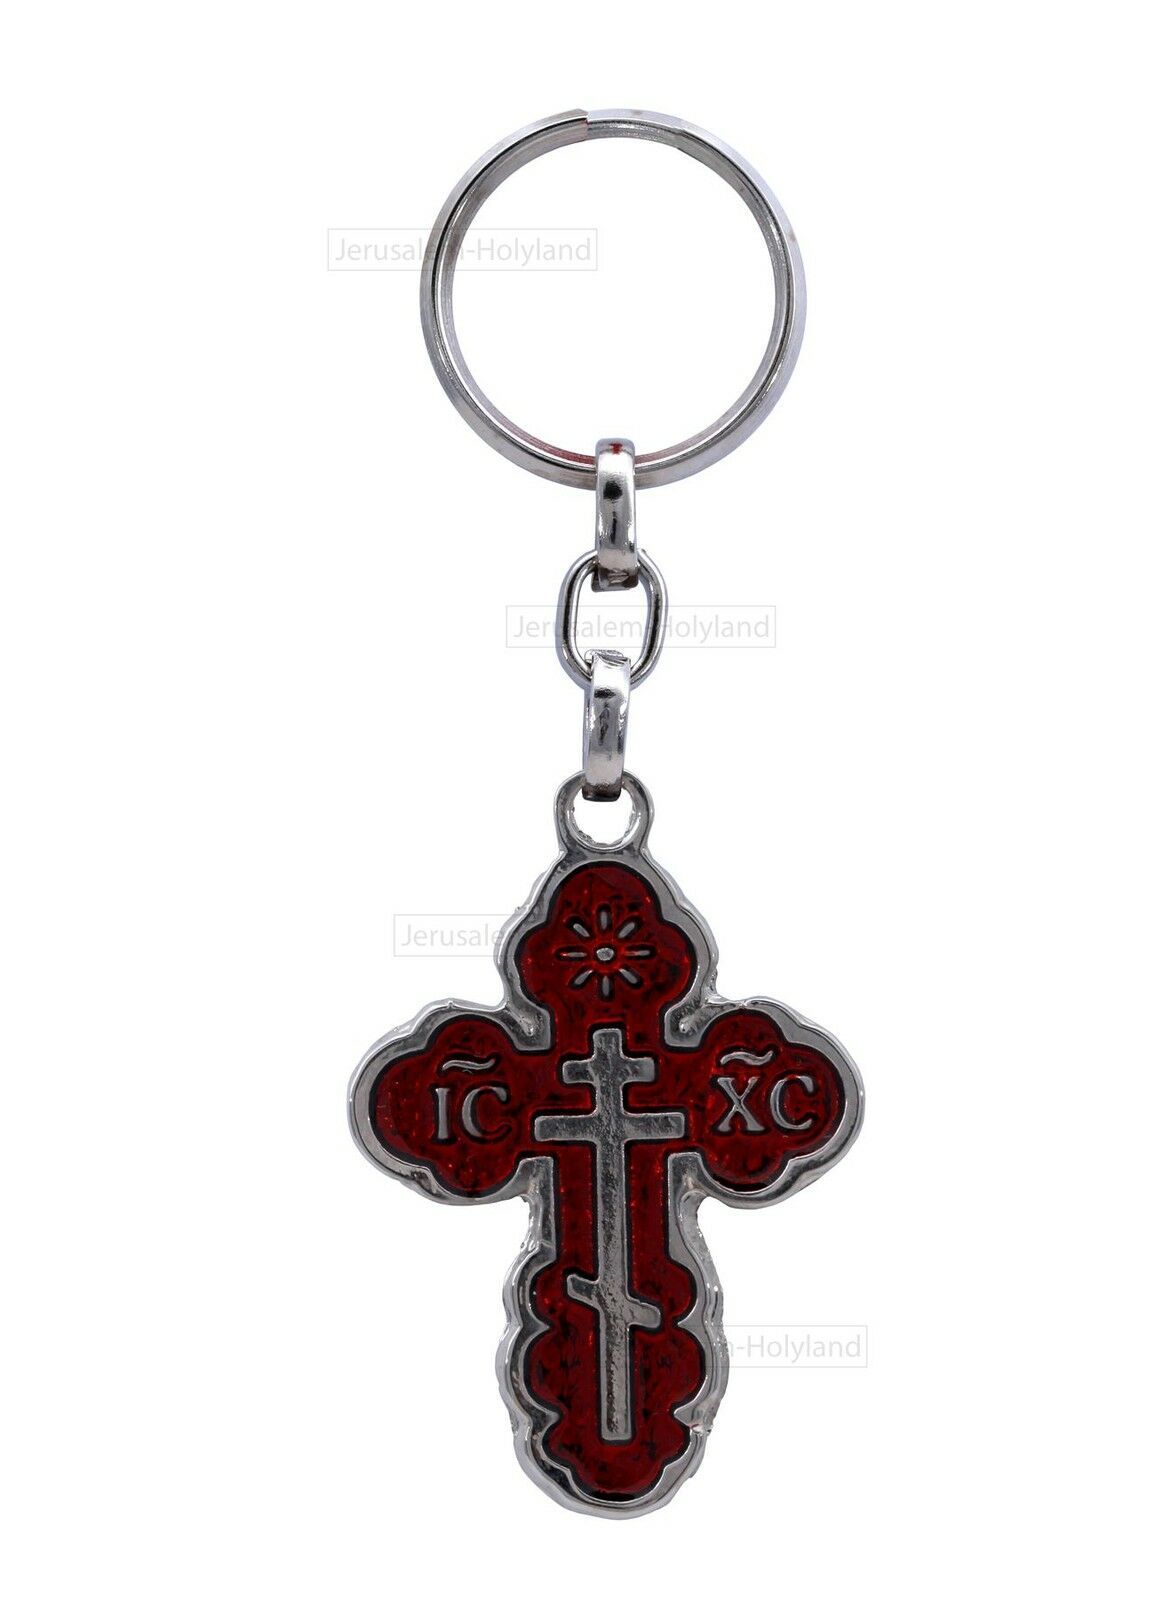 IC XC  Jesus Christ CROSS Charm unisex Key Chain XMAS Crucifix holyland gift